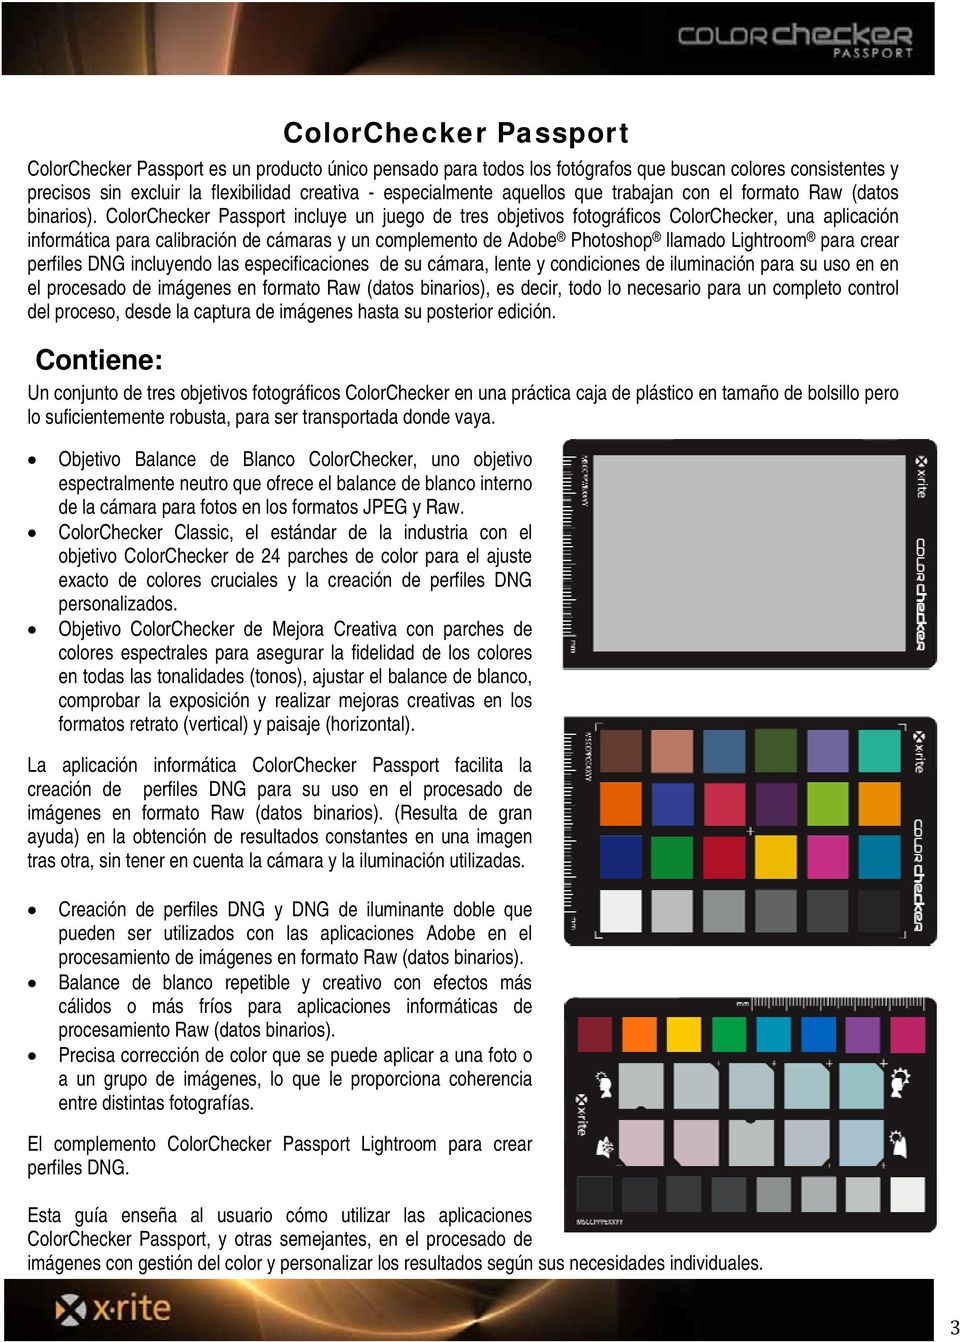 ColorChecker Passport incluye un juego de tres objetivos fotográficos ColorChecker, una aplicación informática para calibración de cámaras y un complemento de Adobe Photoshop llamado Lightroom para